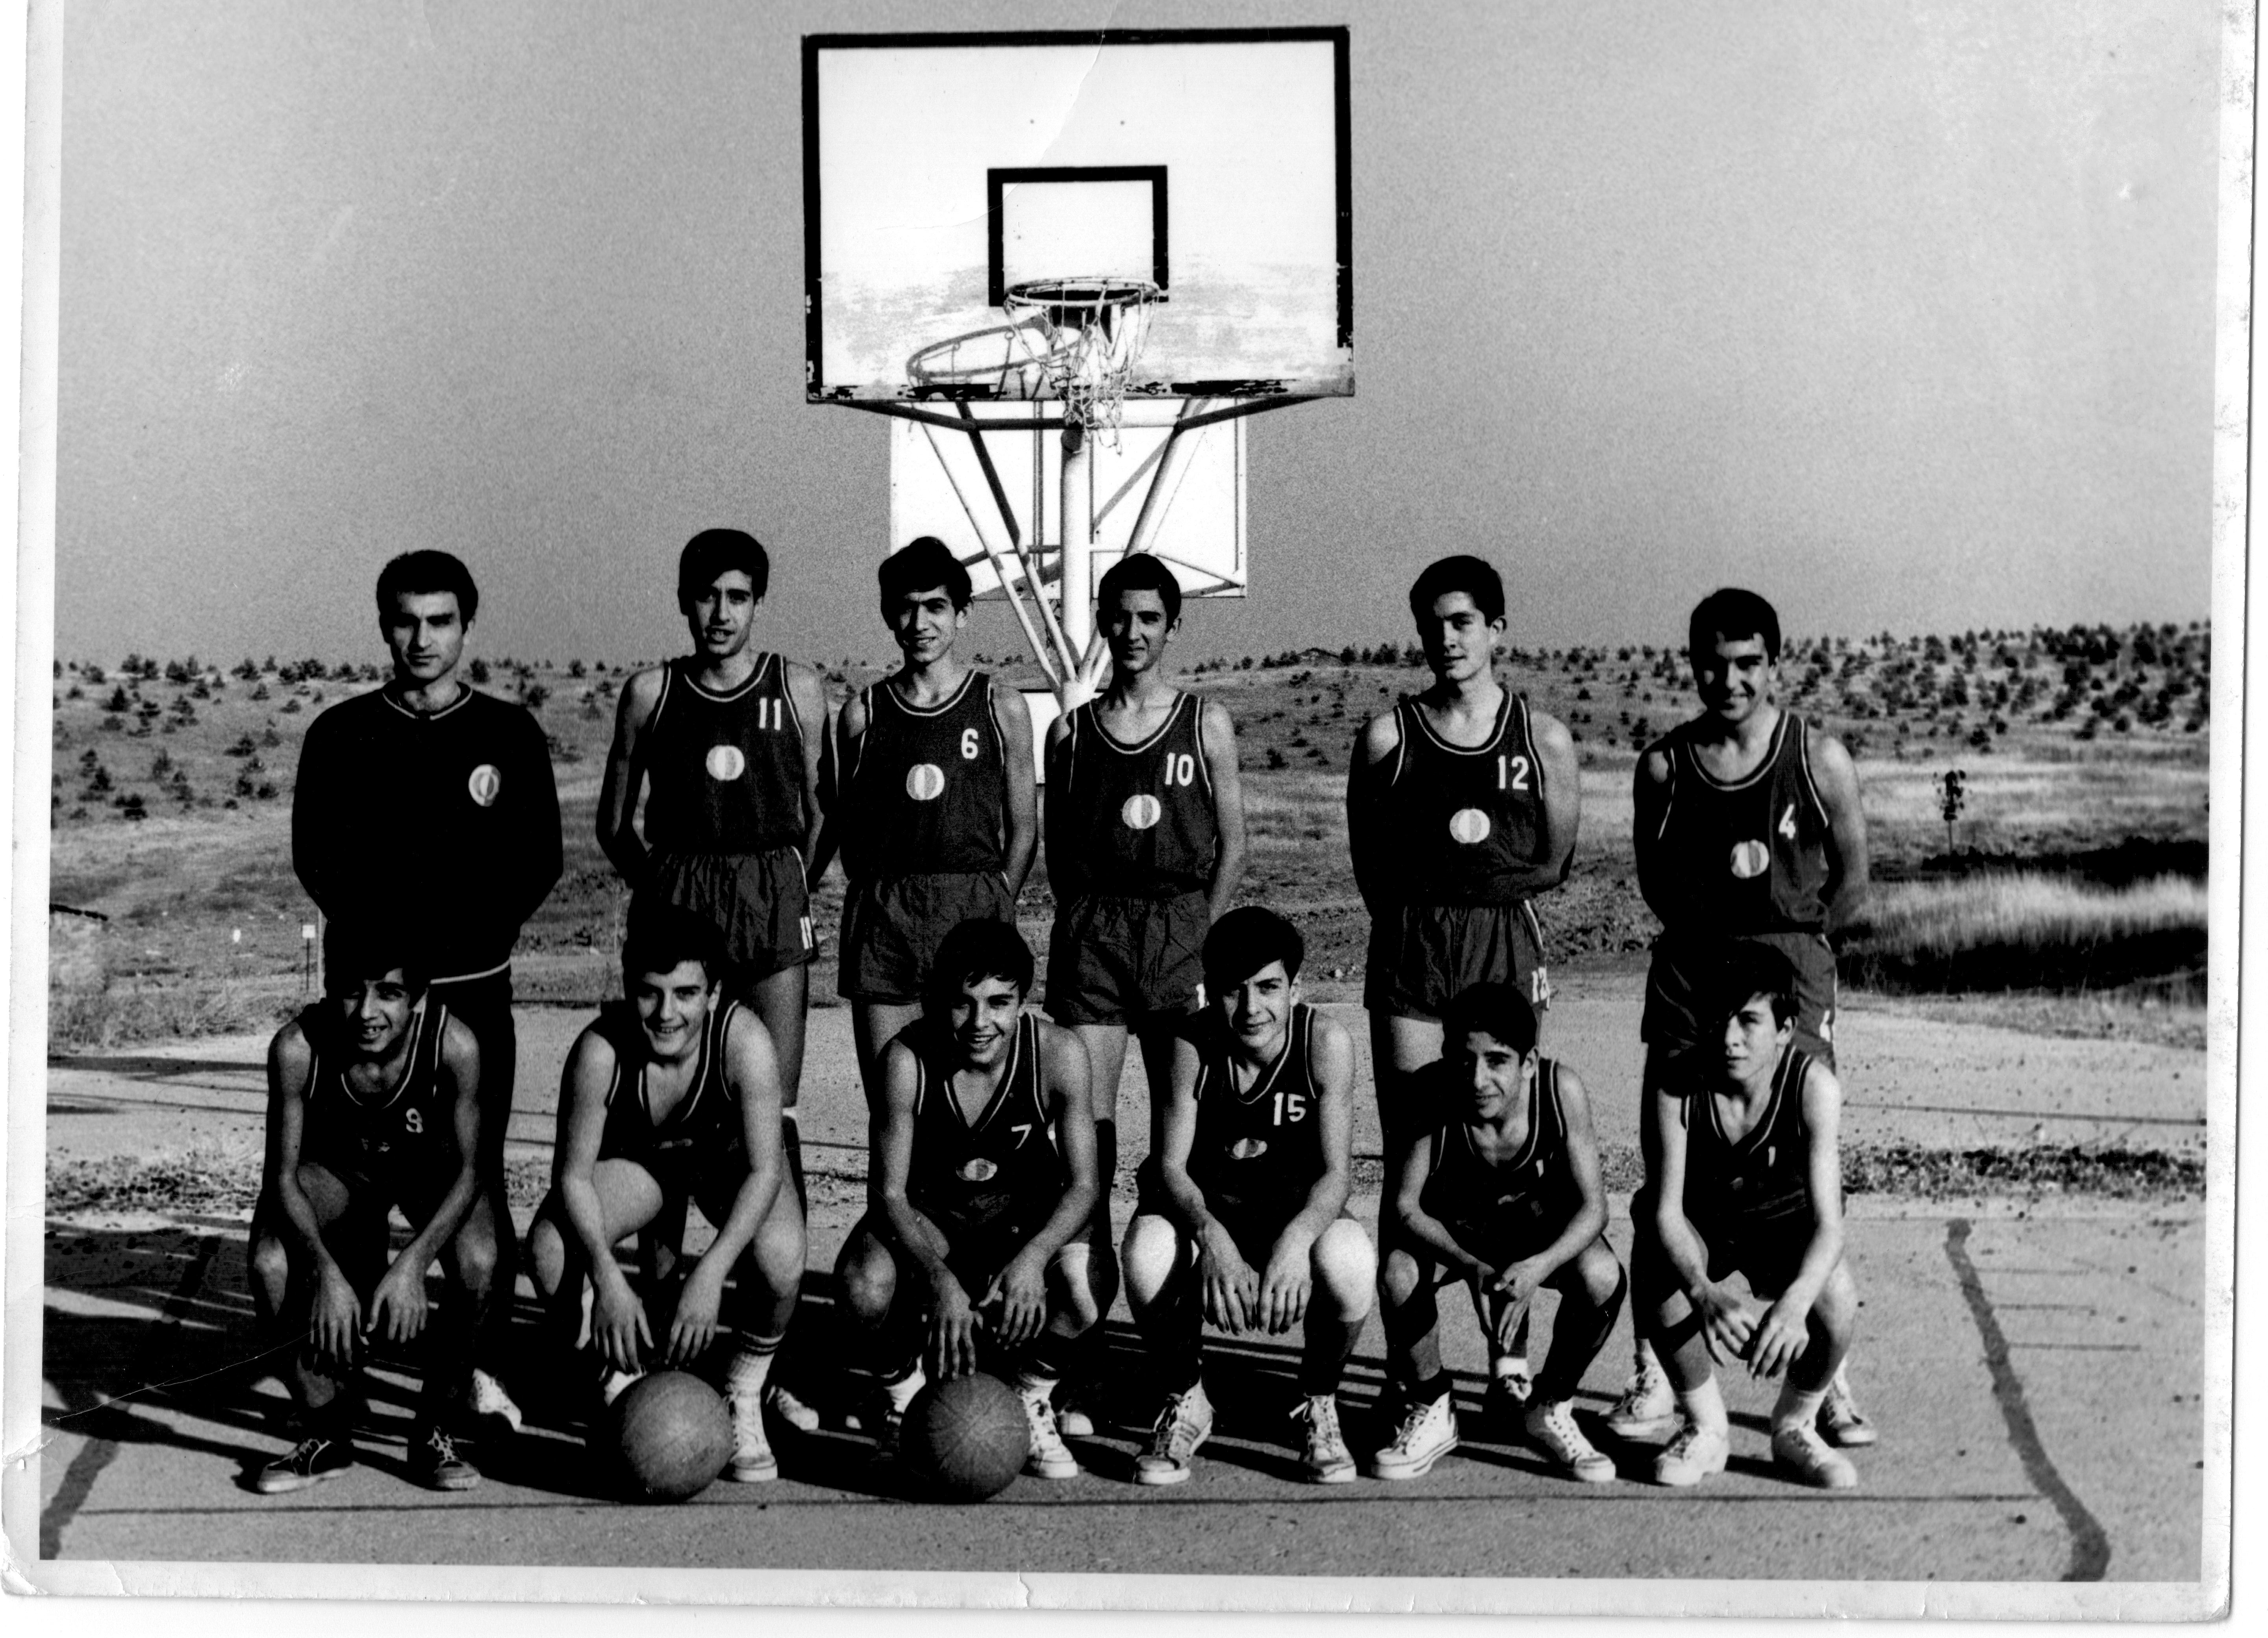 METU Basketball team